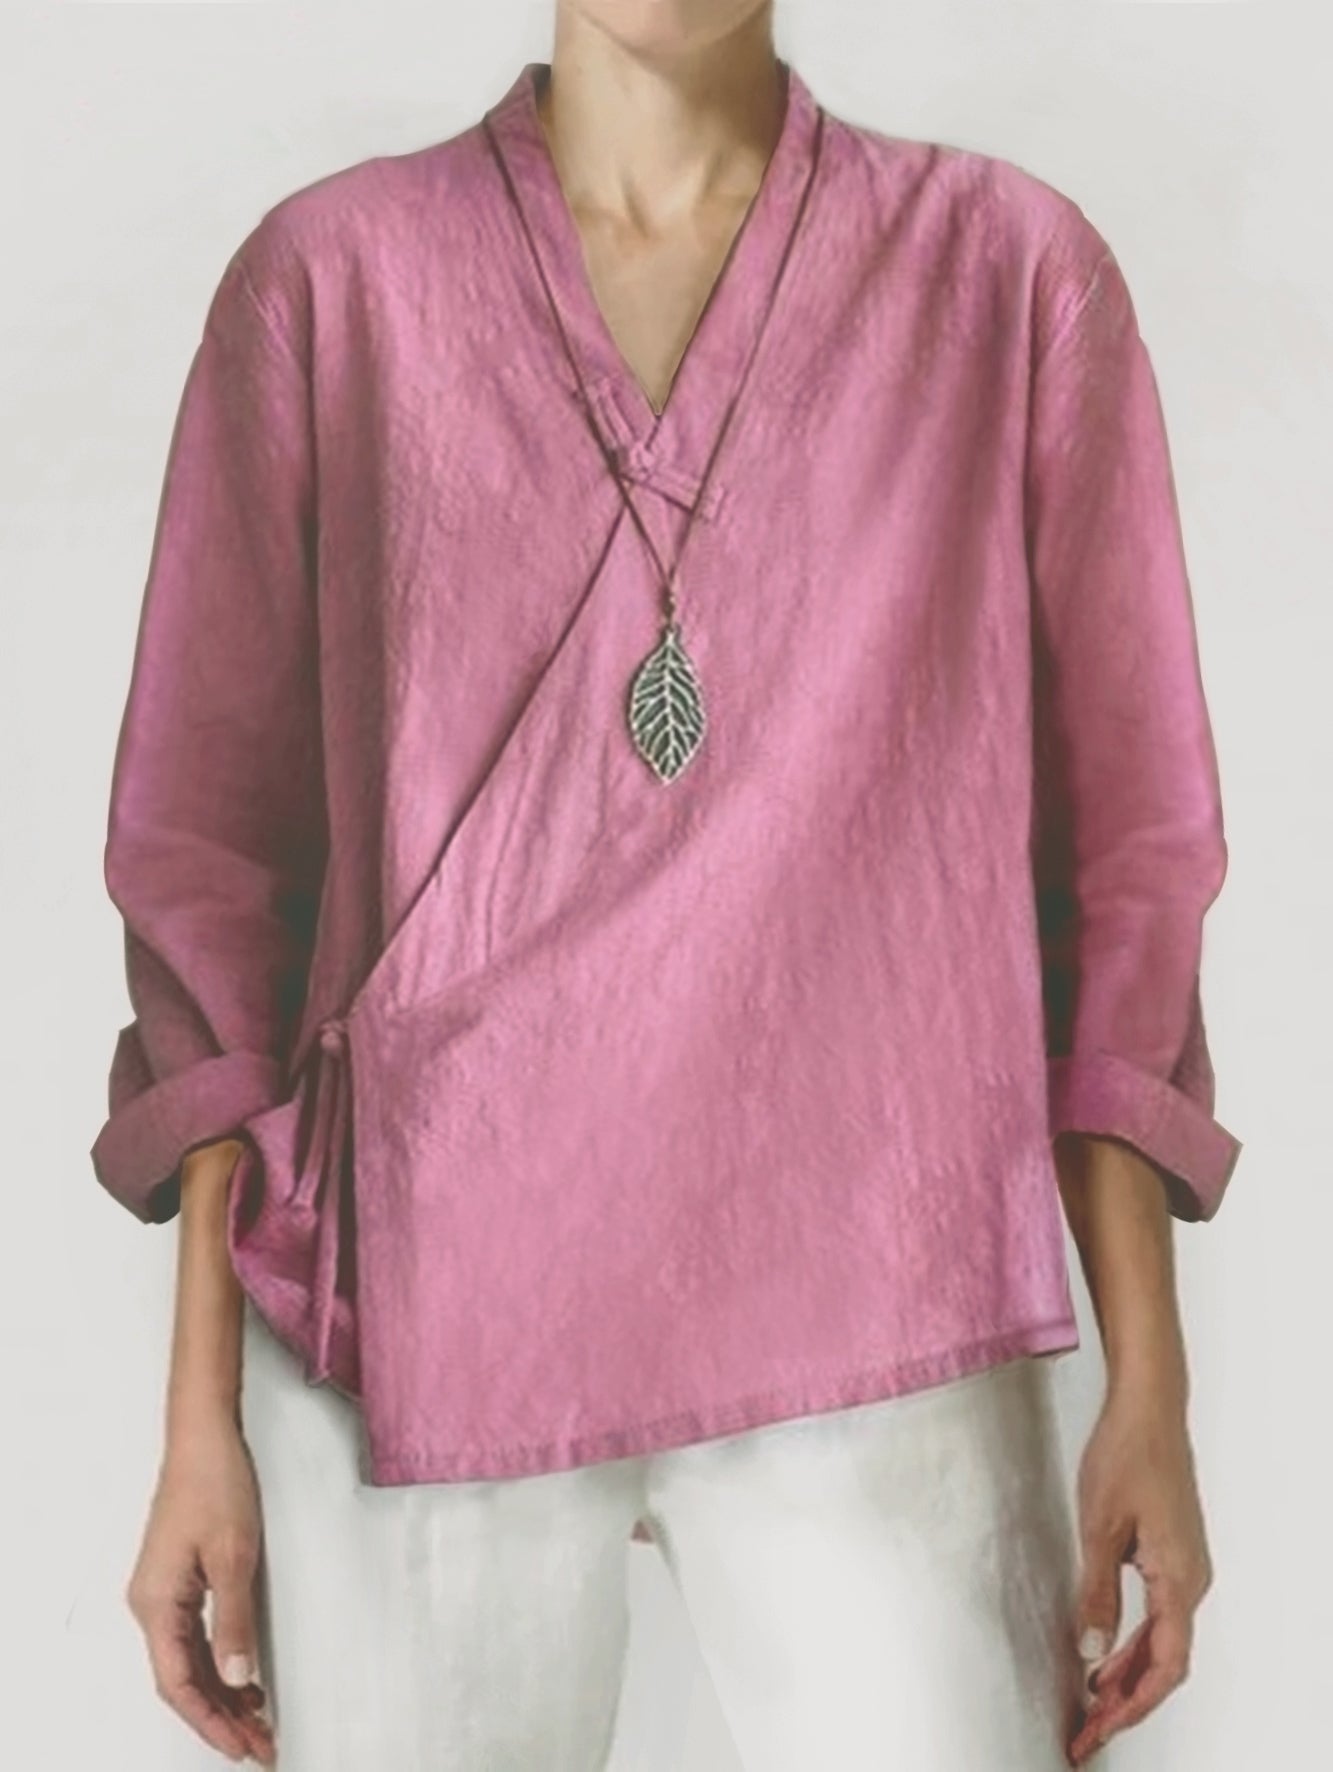 Cotton Linen Fashion Handmade Button Long Sleeve Casual Top